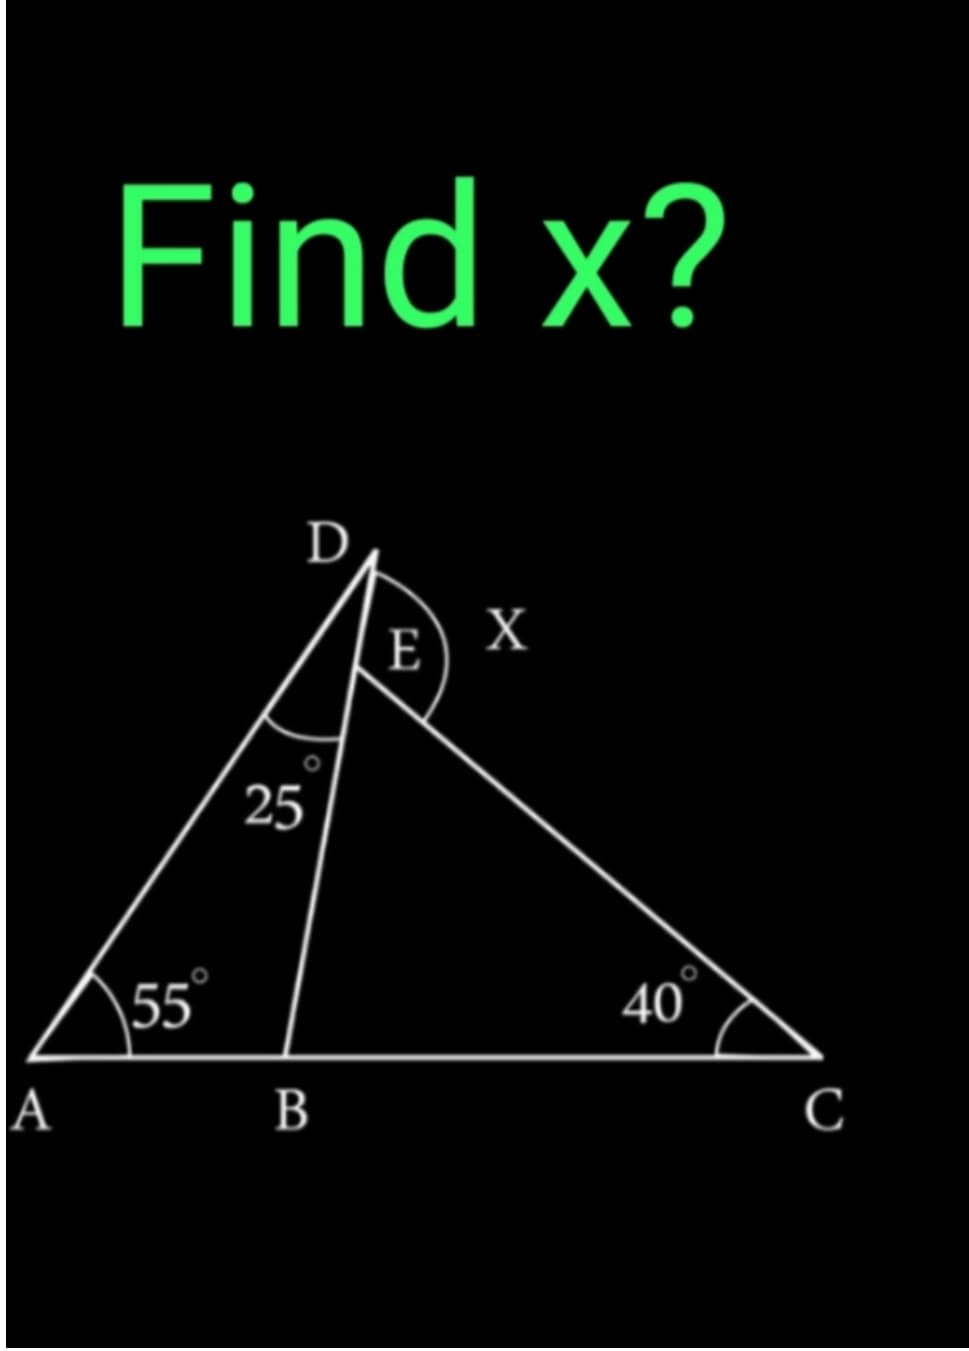 A
Find x?
55
D
25
B
E
X
40
с